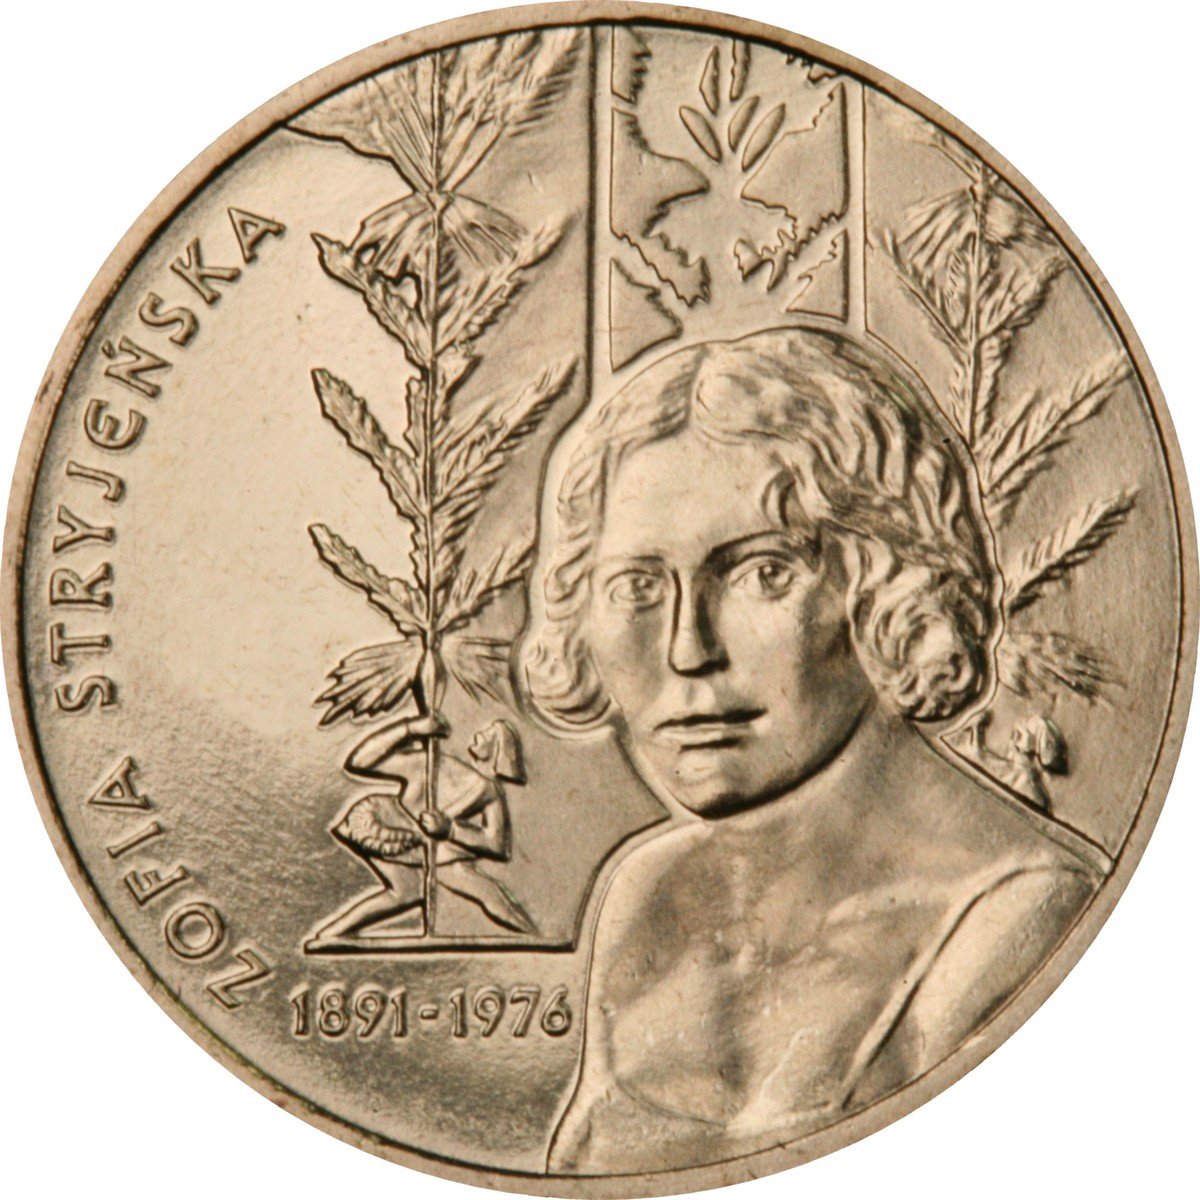 2zl-zofia-stryjenska-1891-1976-rewers-monety